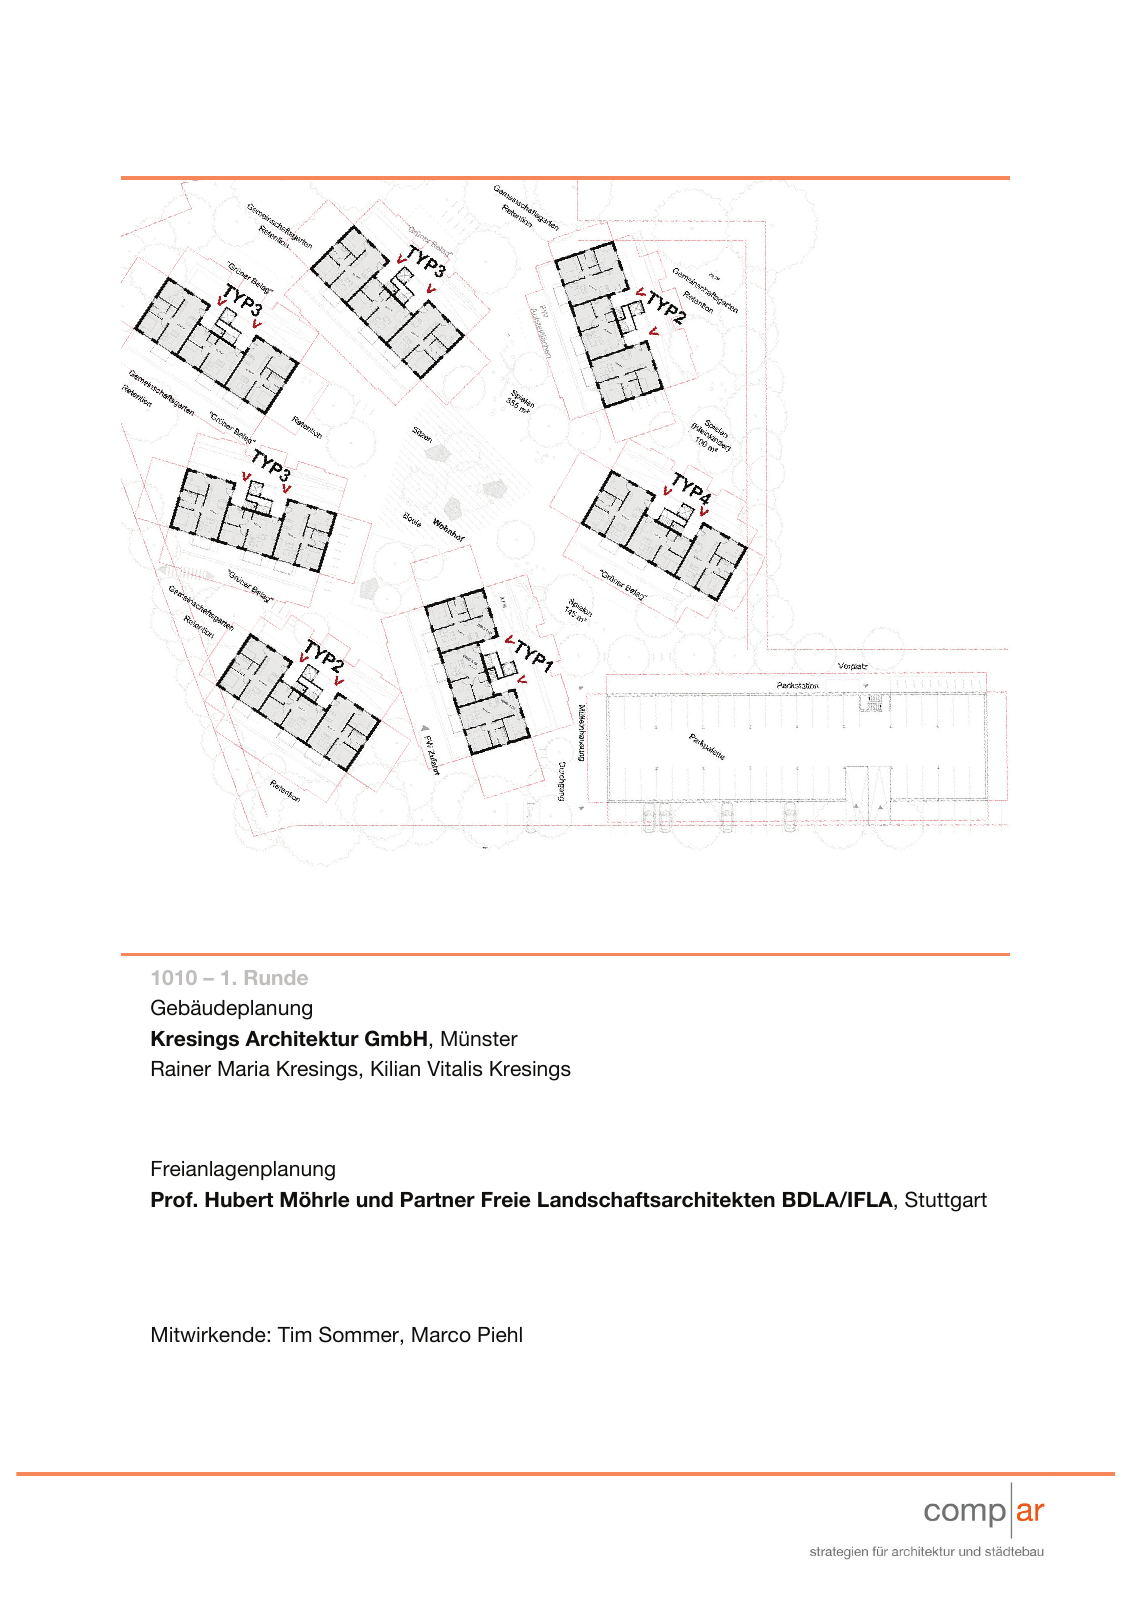 Vorschau Neubau von 100 Wohneinheiten [Nordhorn] Seite 63